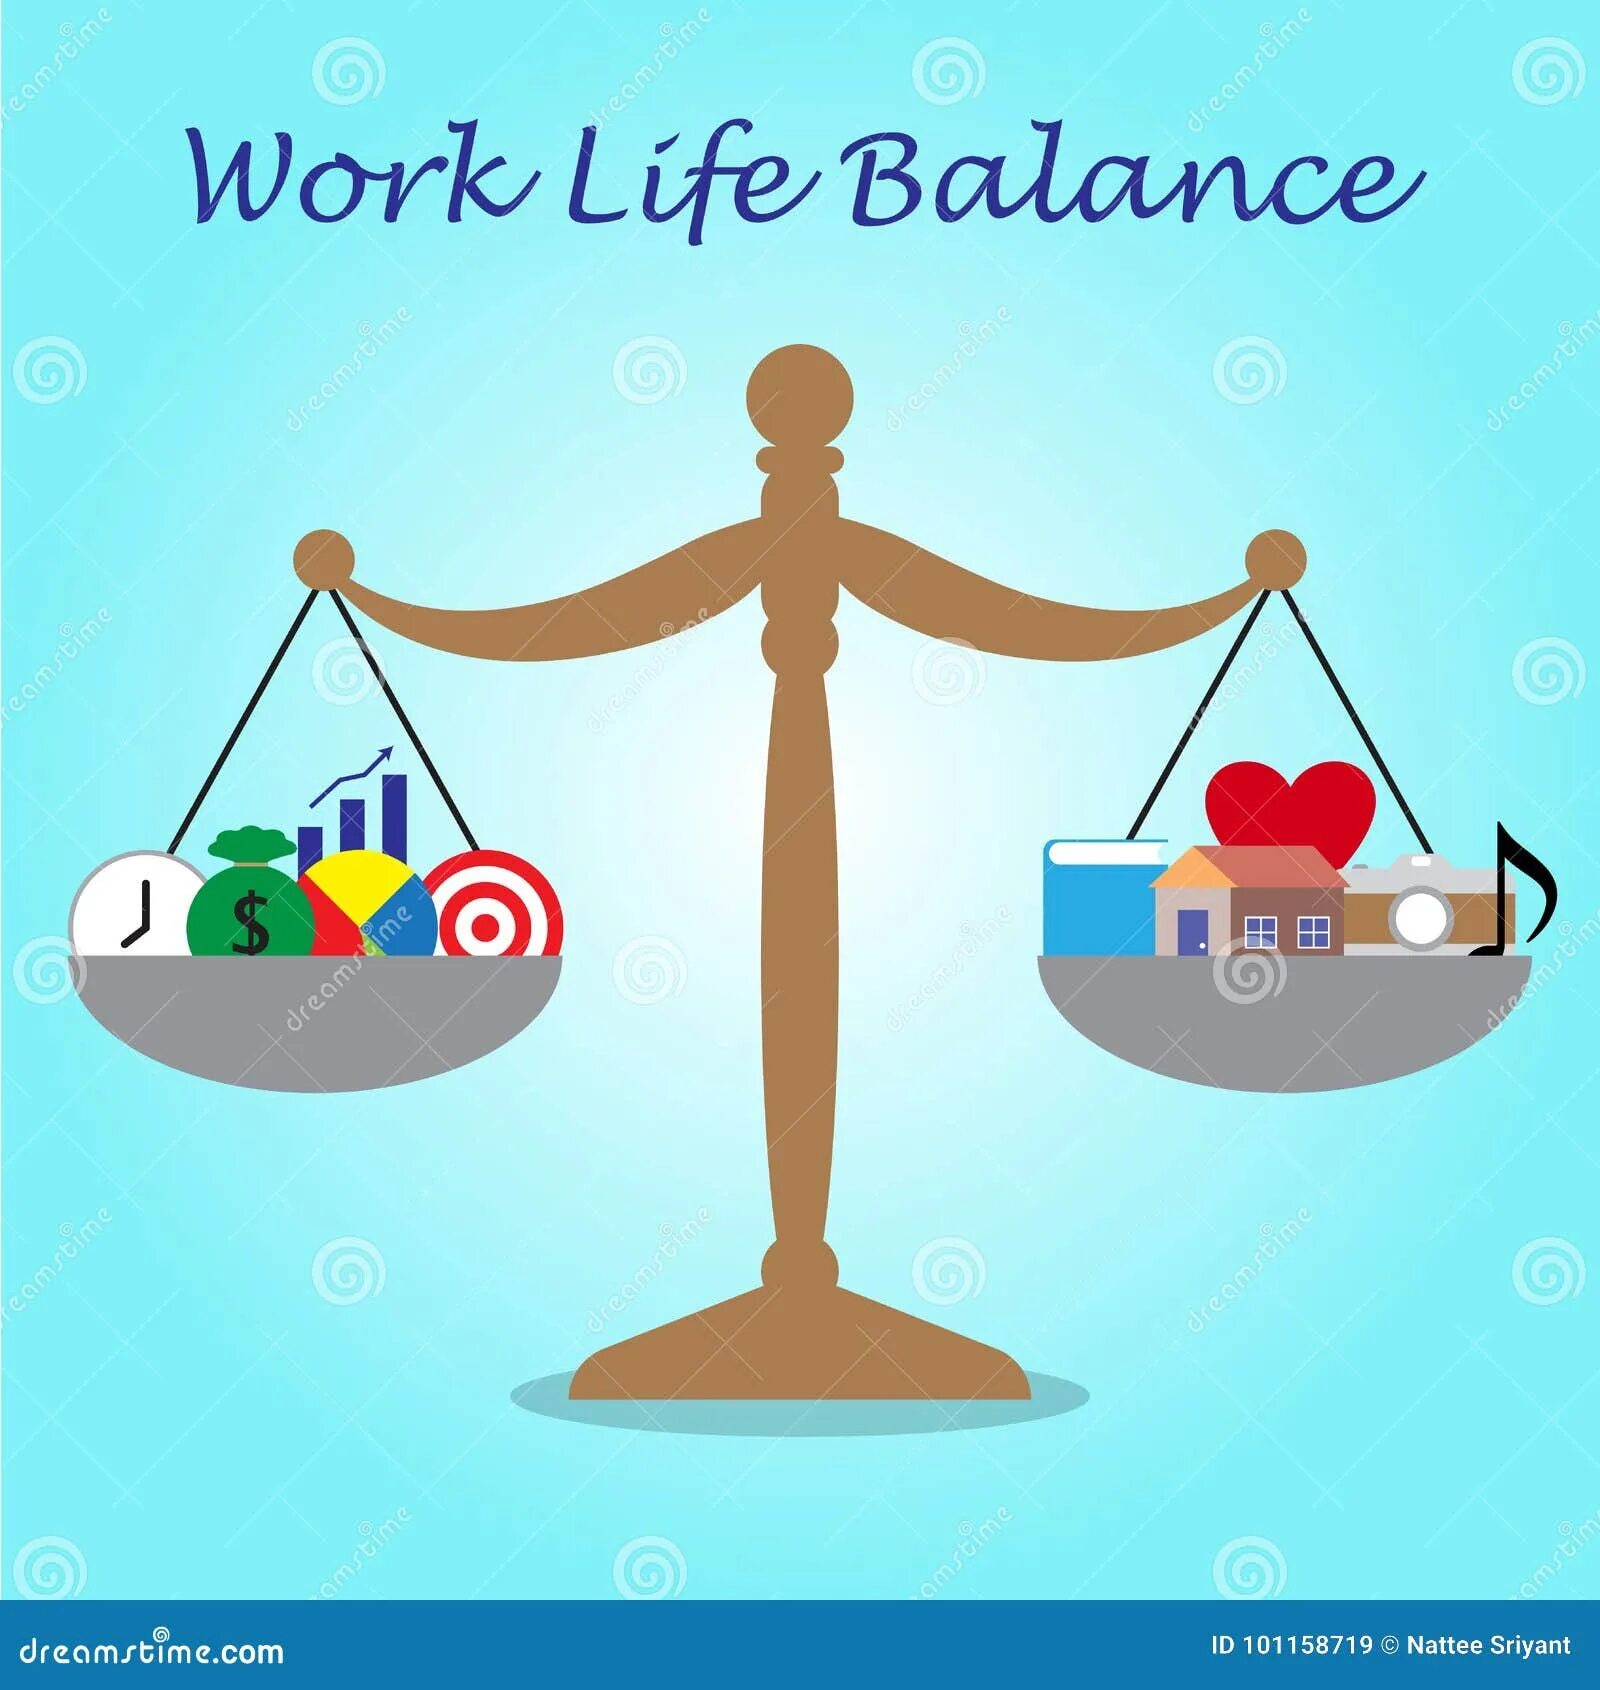 Весы в семейной жизни мужчины. Весы баланс. Баланс жизни. Work Life Balance картинки. Баланс работы и отдыха рисунок.